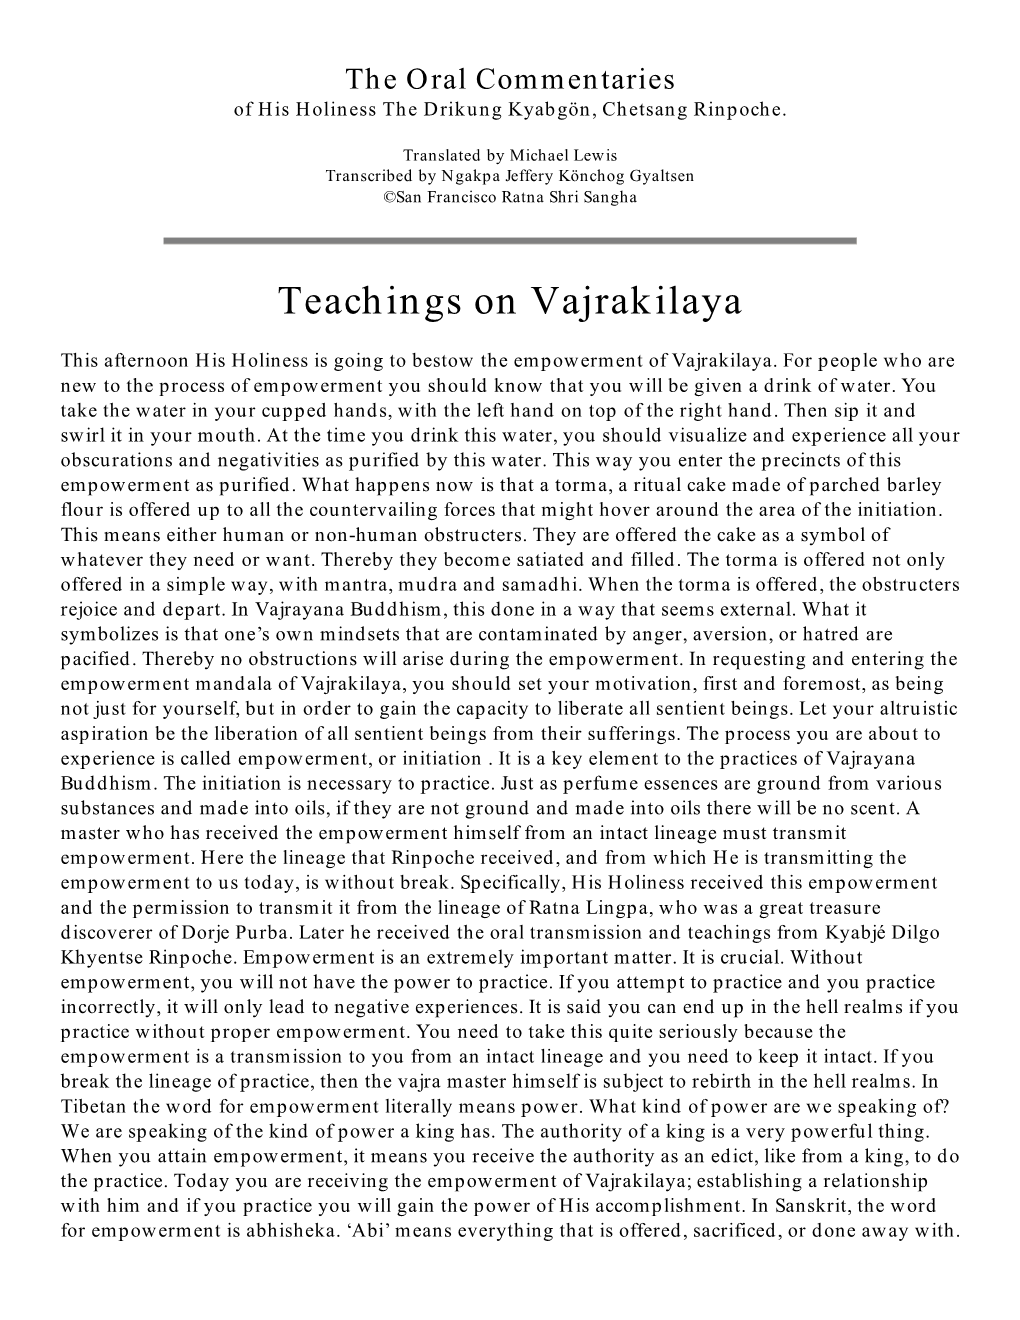 Teachings on Vajrakilaya